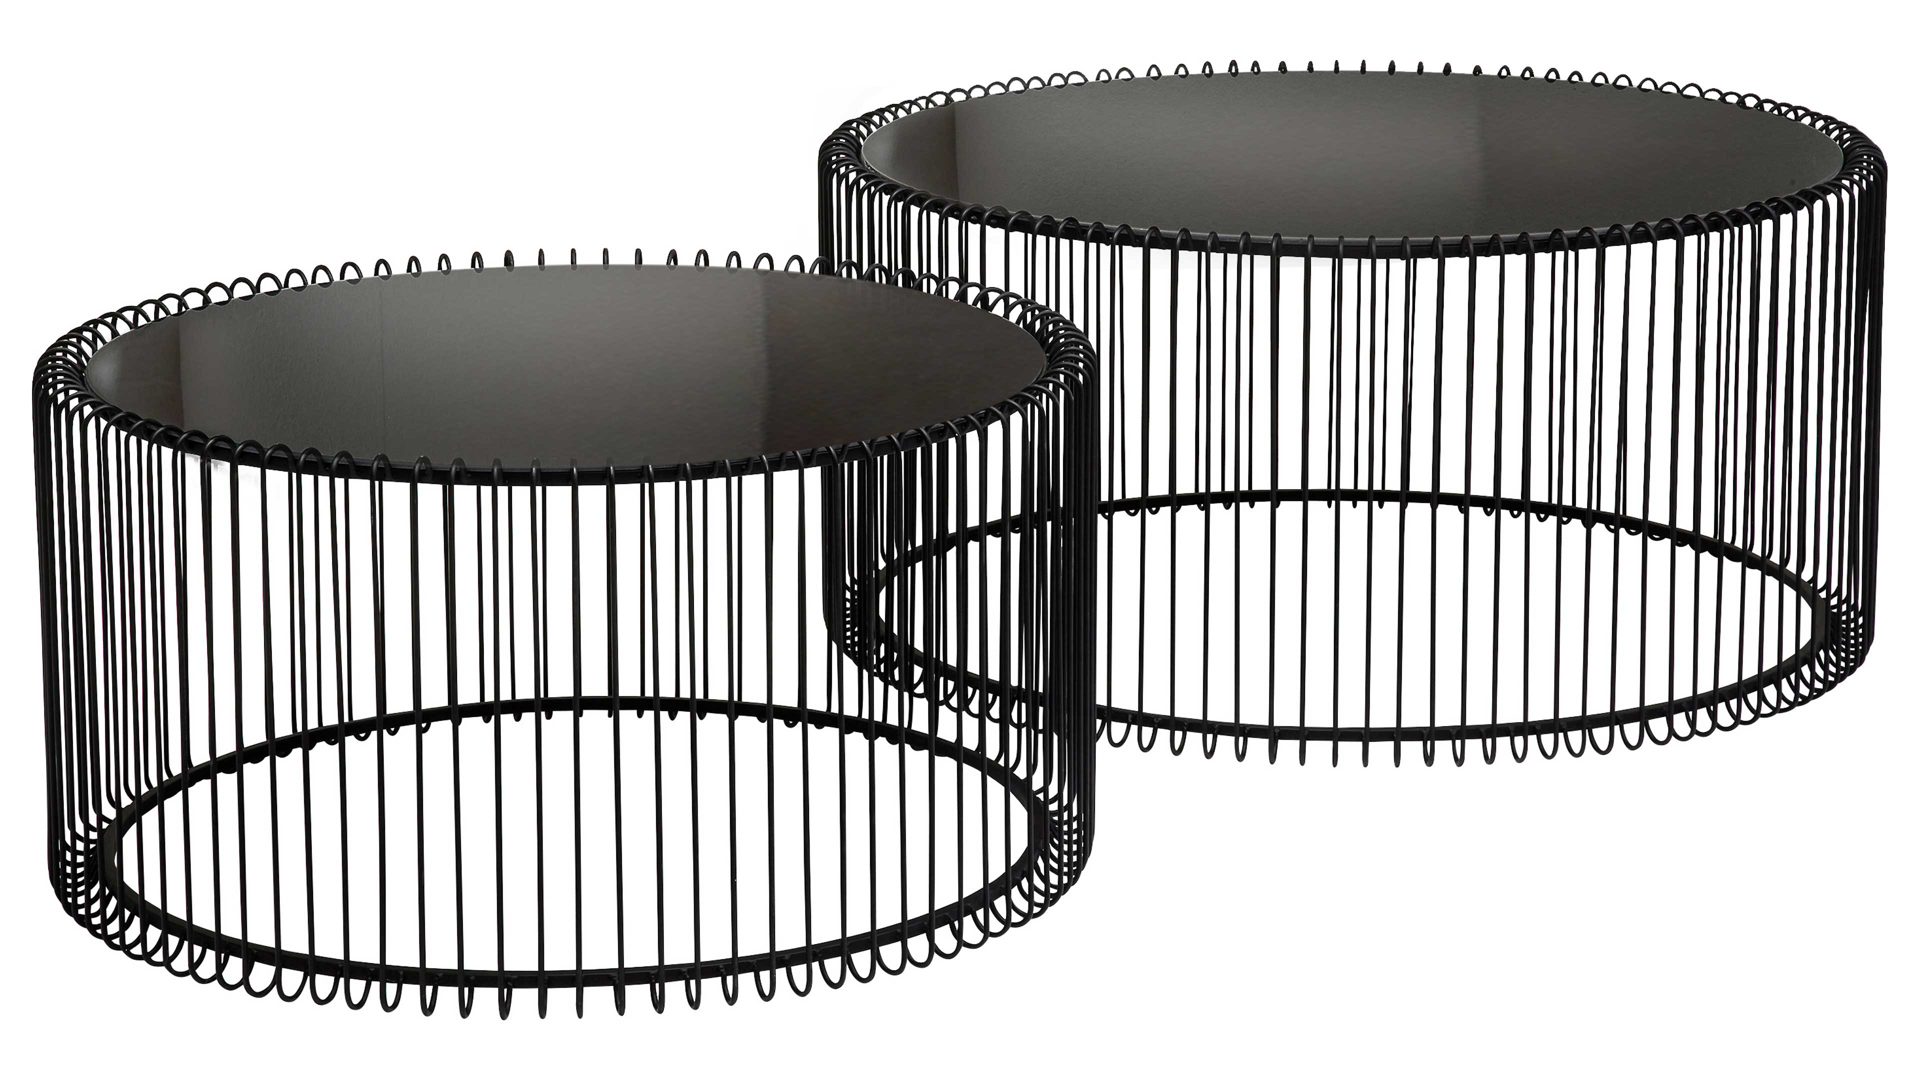 Couchtisch-Set Kare design aus Metall in Schwarz KARE DESIGN Couchtisch-Set Wire als Wohnzimmermöbel schwarzer Stahldraht & Glas  - zweiteilig